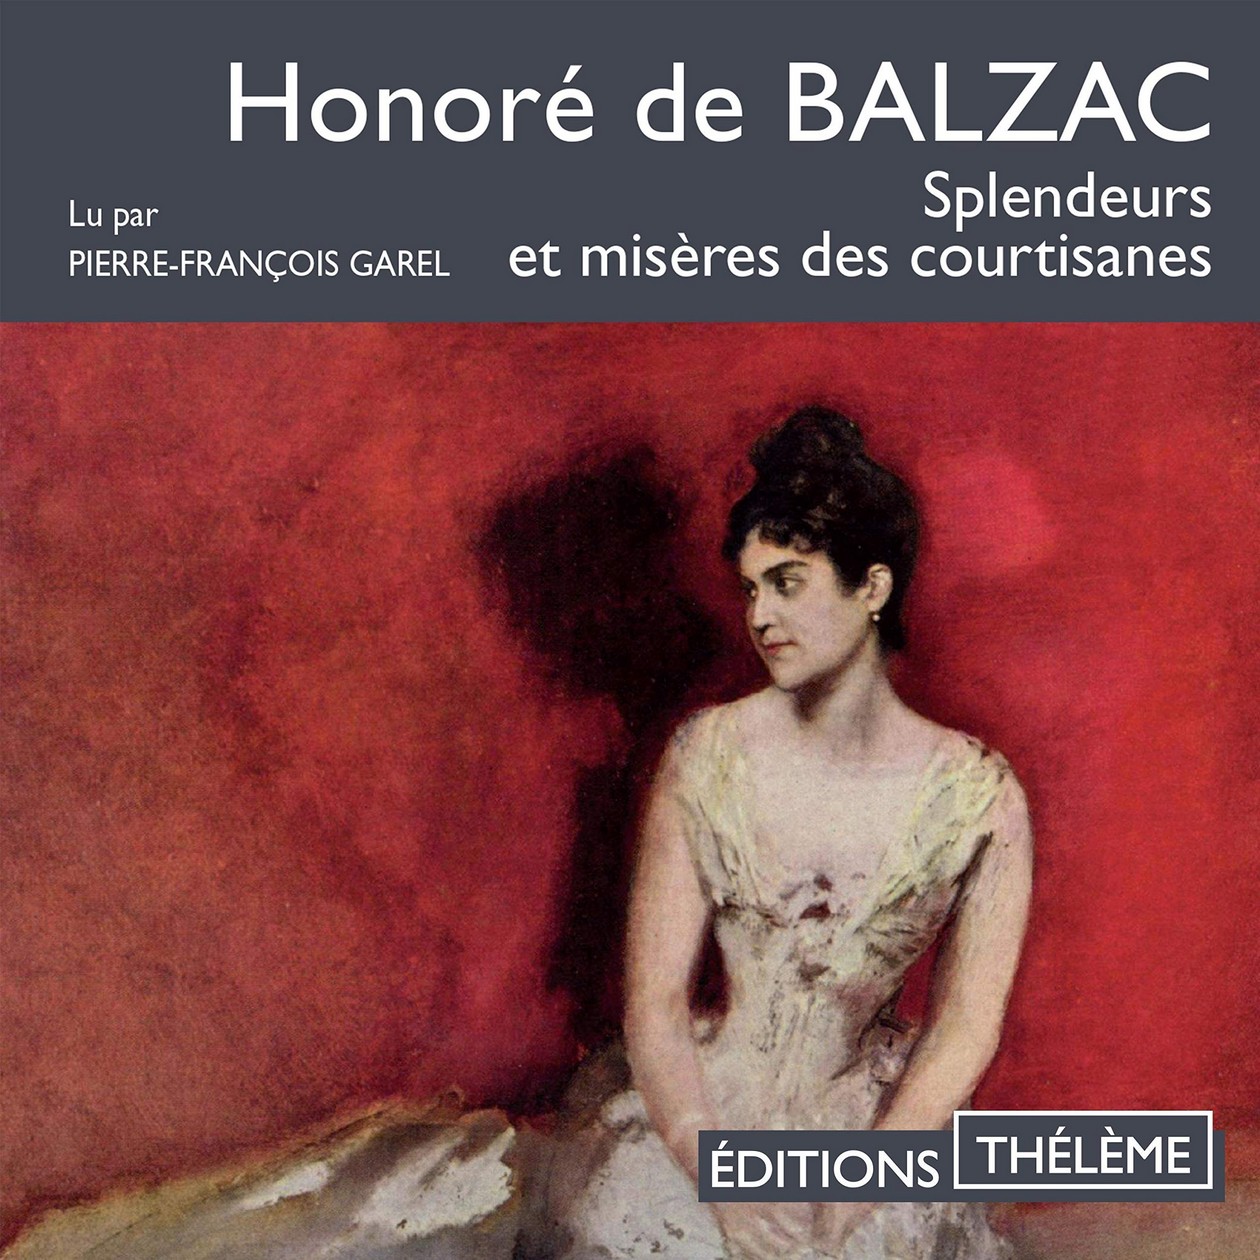 Audiobook / Livre audio : Balzac, Splendeurs et misères des courtisanes. Lu par Pierre-François Garel (20h)